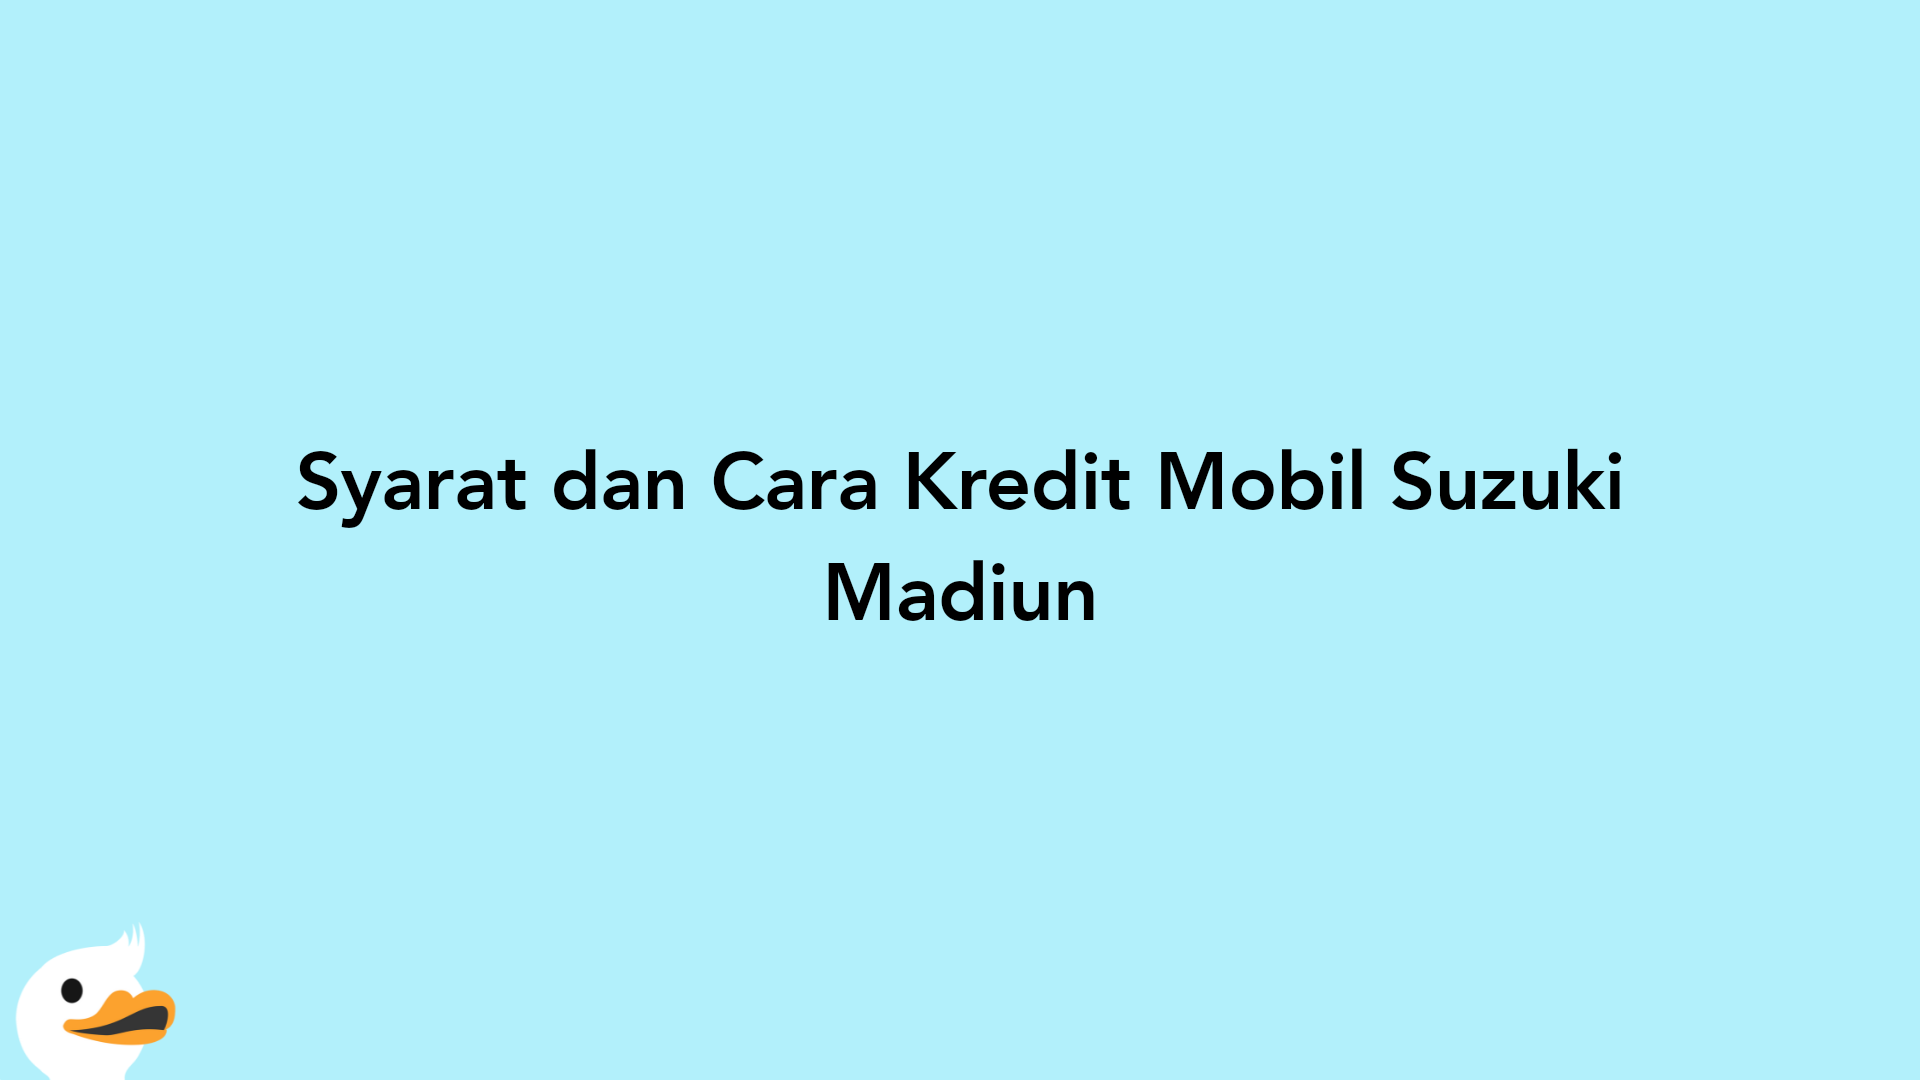 Syarat dan Cara Kredit Mobil Suzuki Madiun